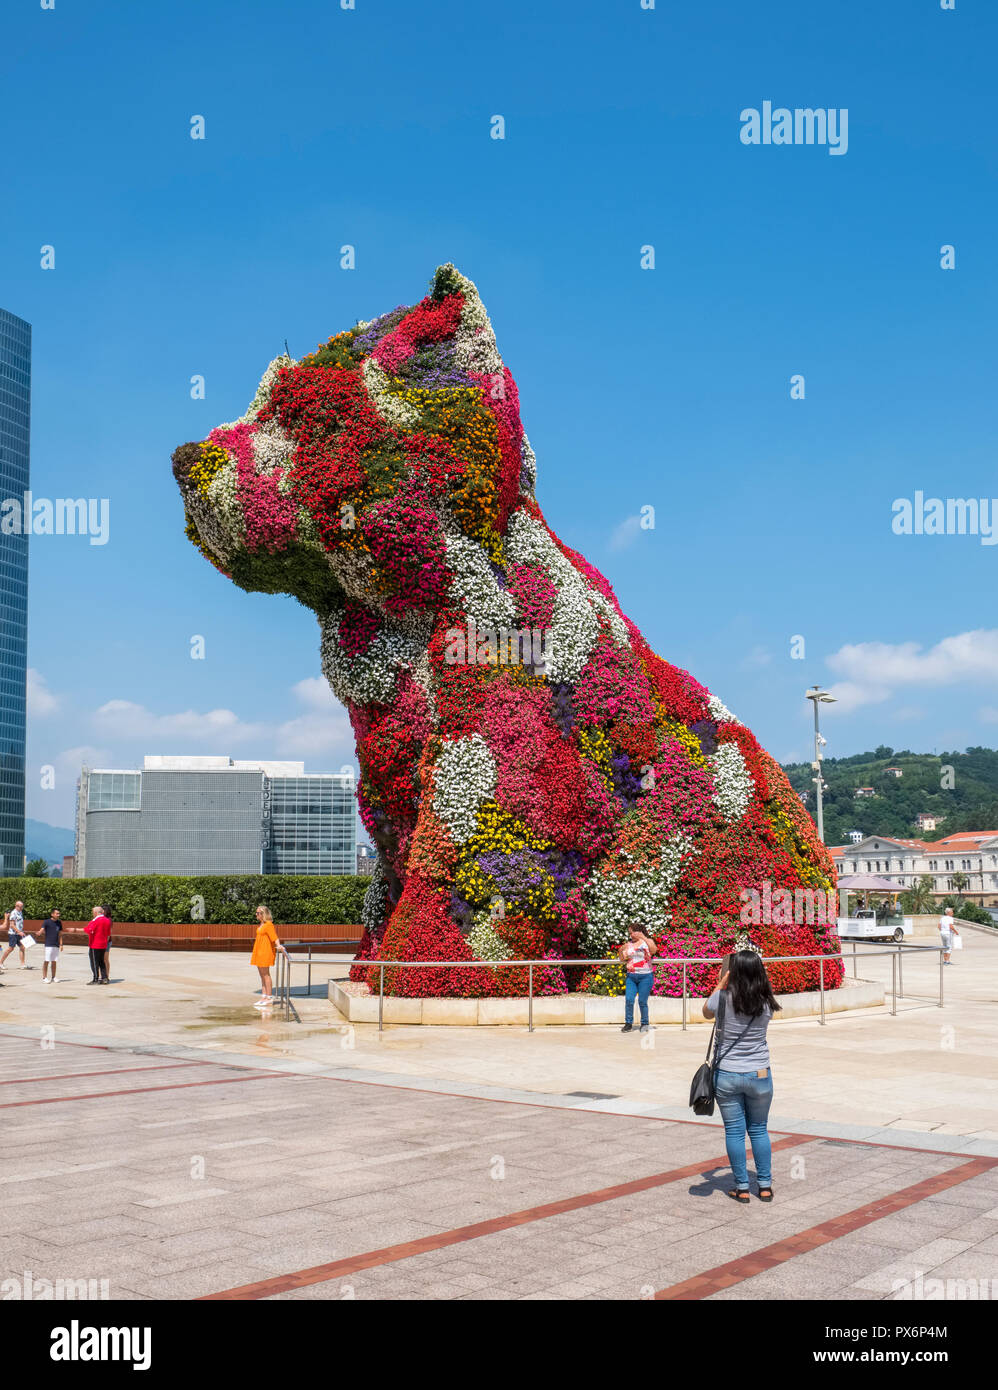 Chiot, une fleur art sculpture de Jeff Koons à Bilbao, Espagne, Europe Banque D'Images